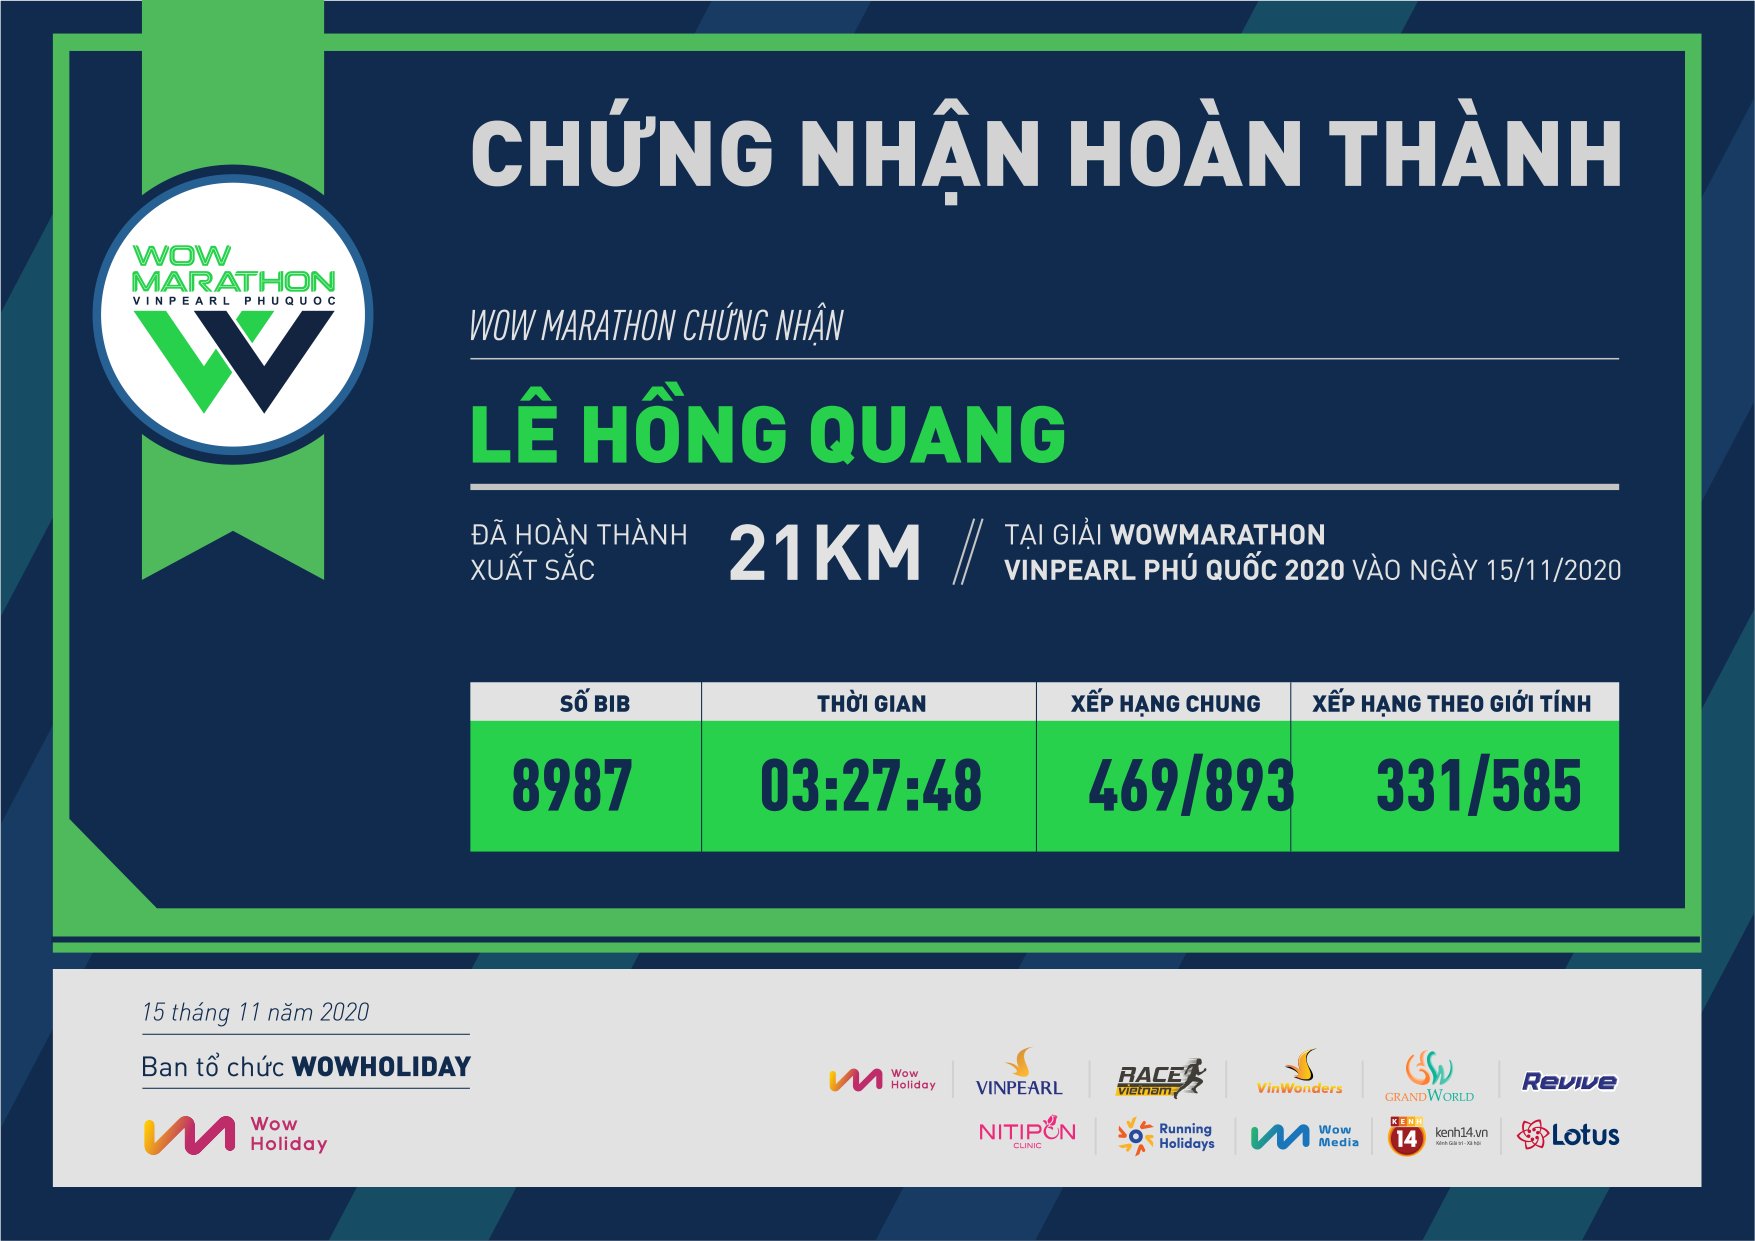 8987 - Lê Hồng Quang